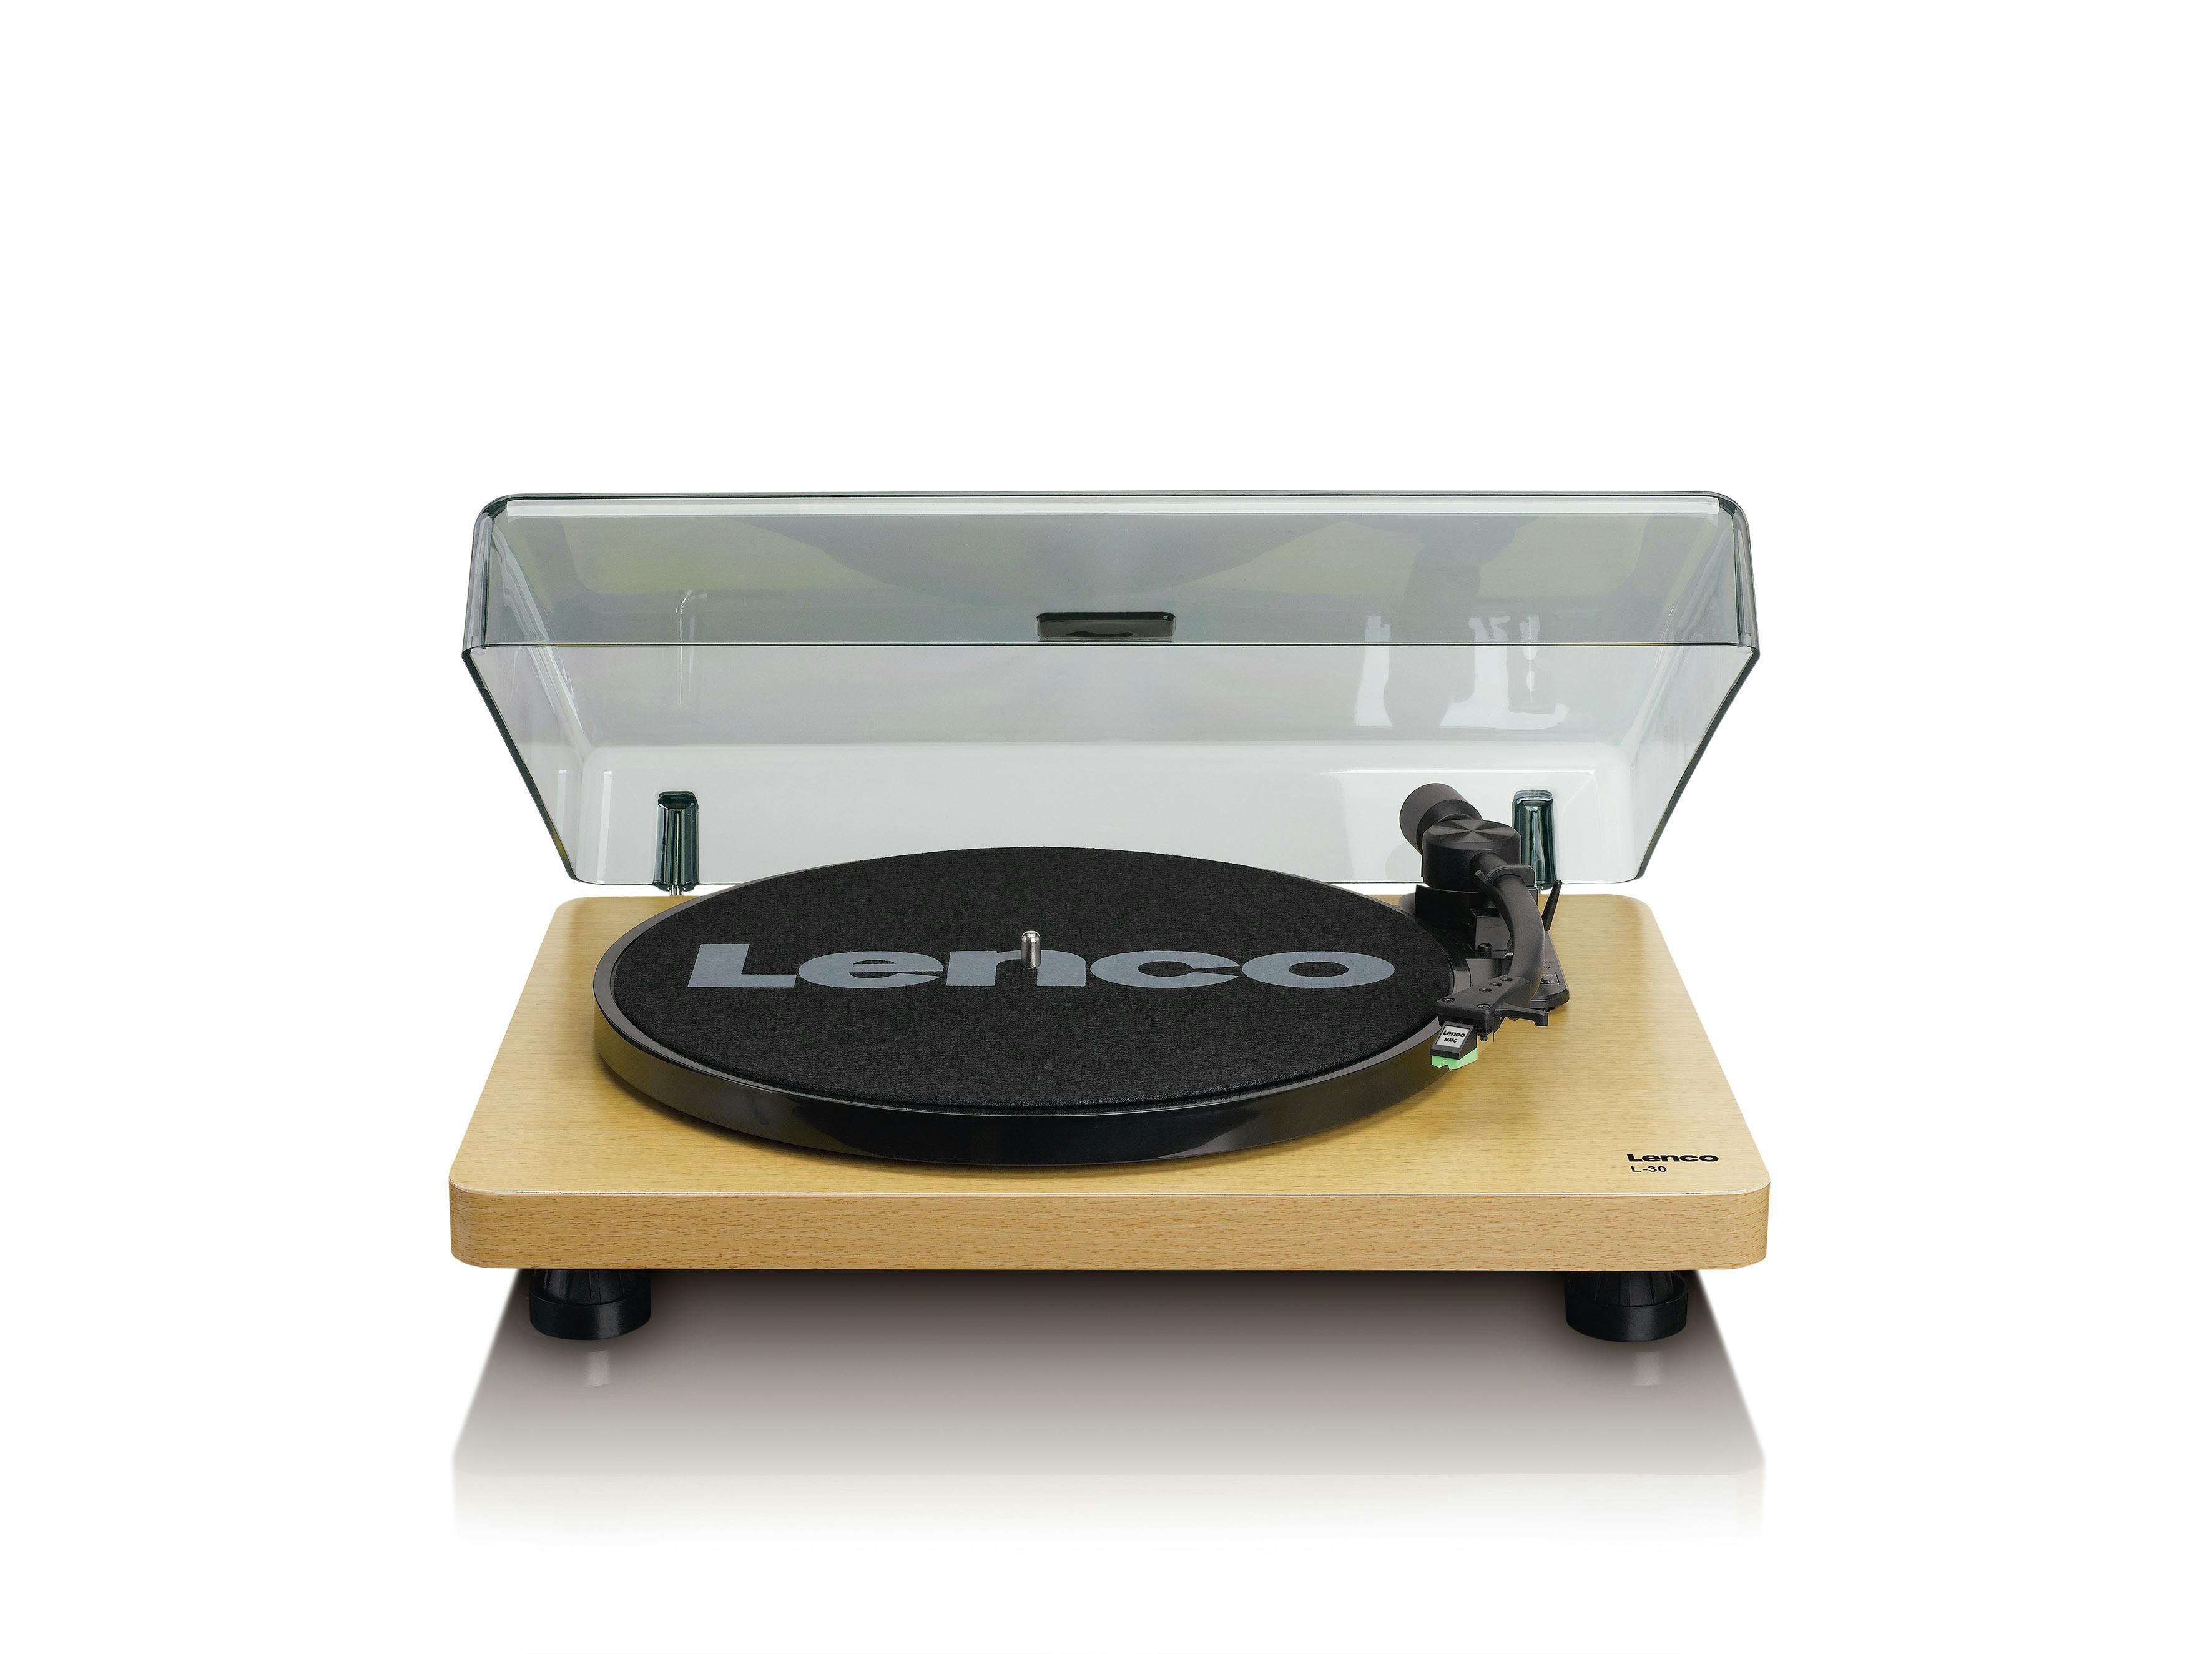 Audio-Plattenspieler | WOOD mit L-30 Marktplatz Lenco METRO Plattenspieler Riemenantrieb